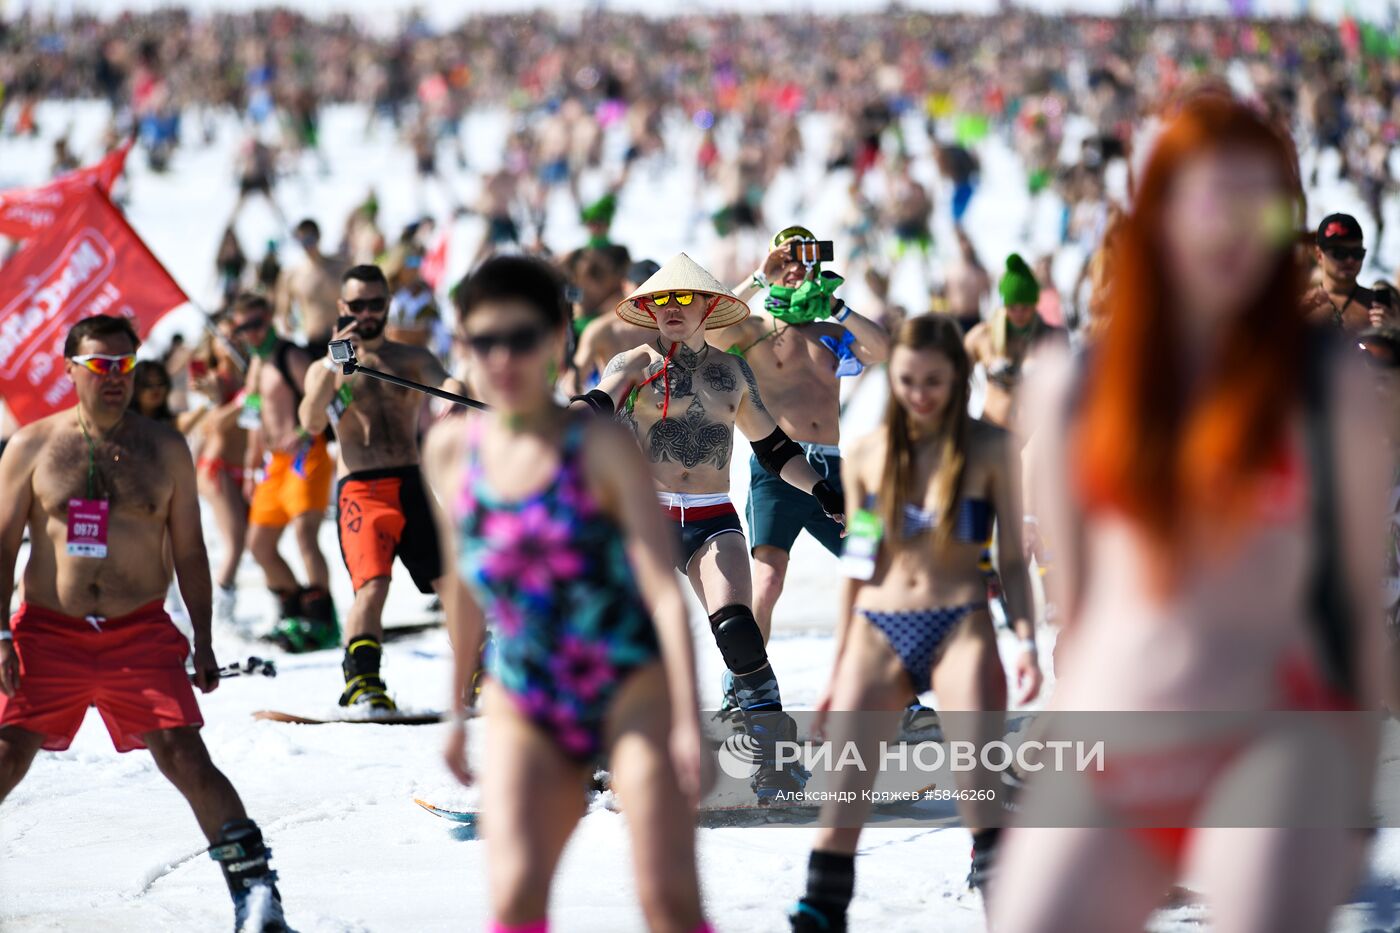 Массовый спуск в купальниках на фестивале GrelkaFest в Шерегеше 